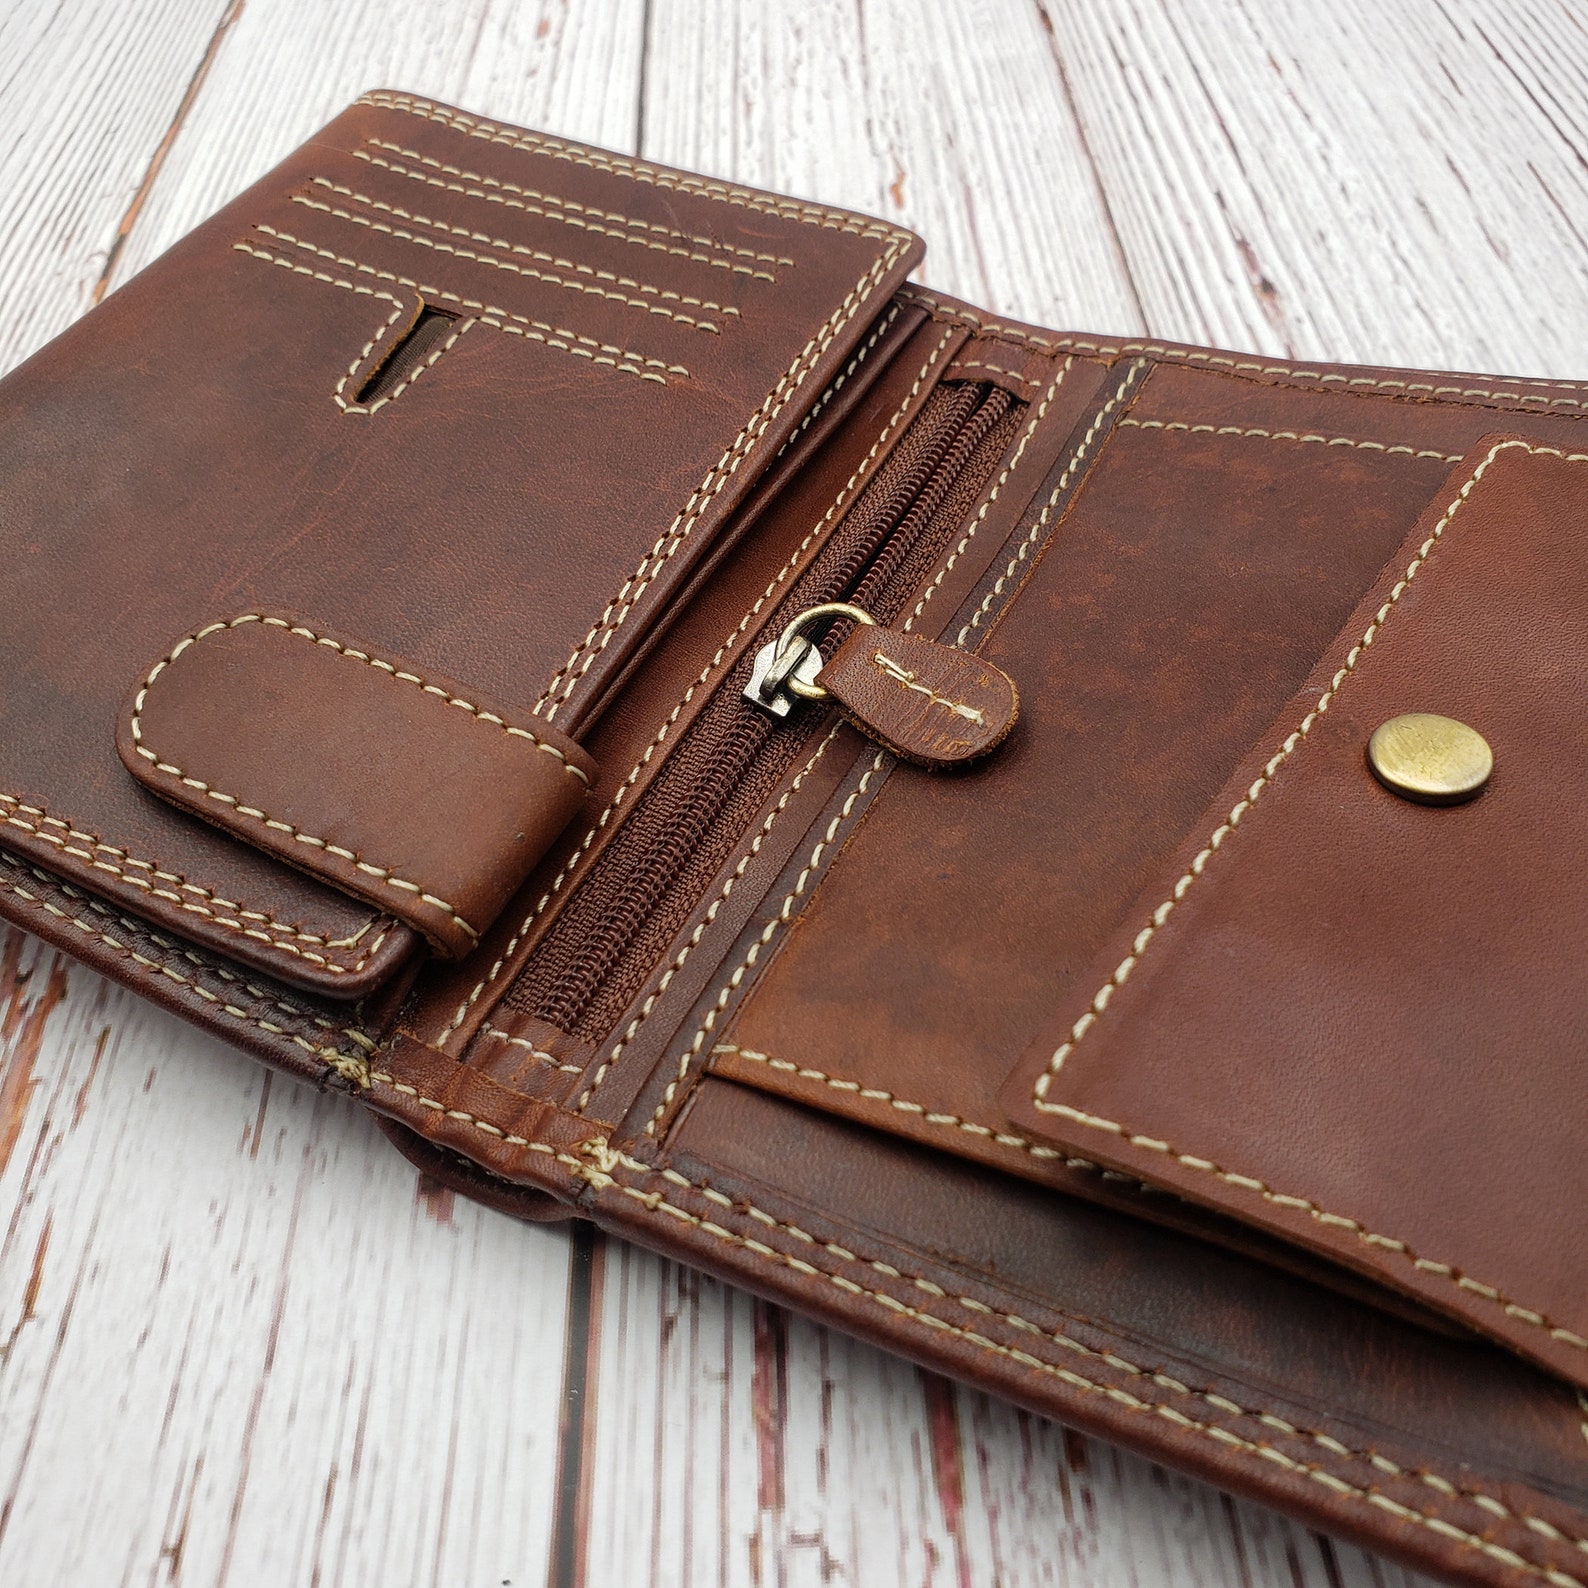 AG Wallets Mens Vintage Genuine Leather Hipster Wallet - Etsy